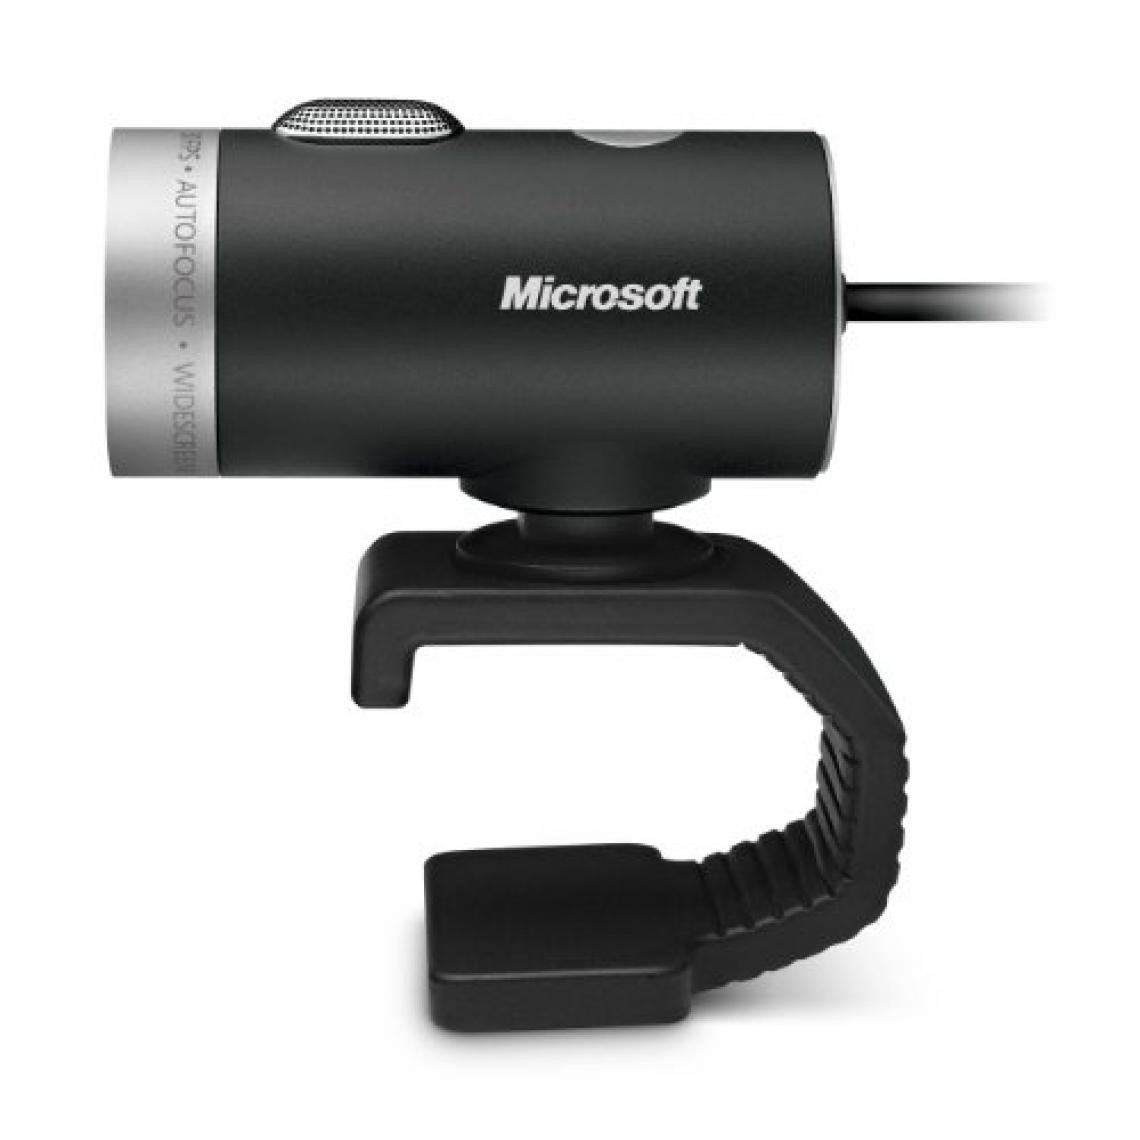 Microsoft - Microsoft LifeCam Cinema Webcam - Webcam